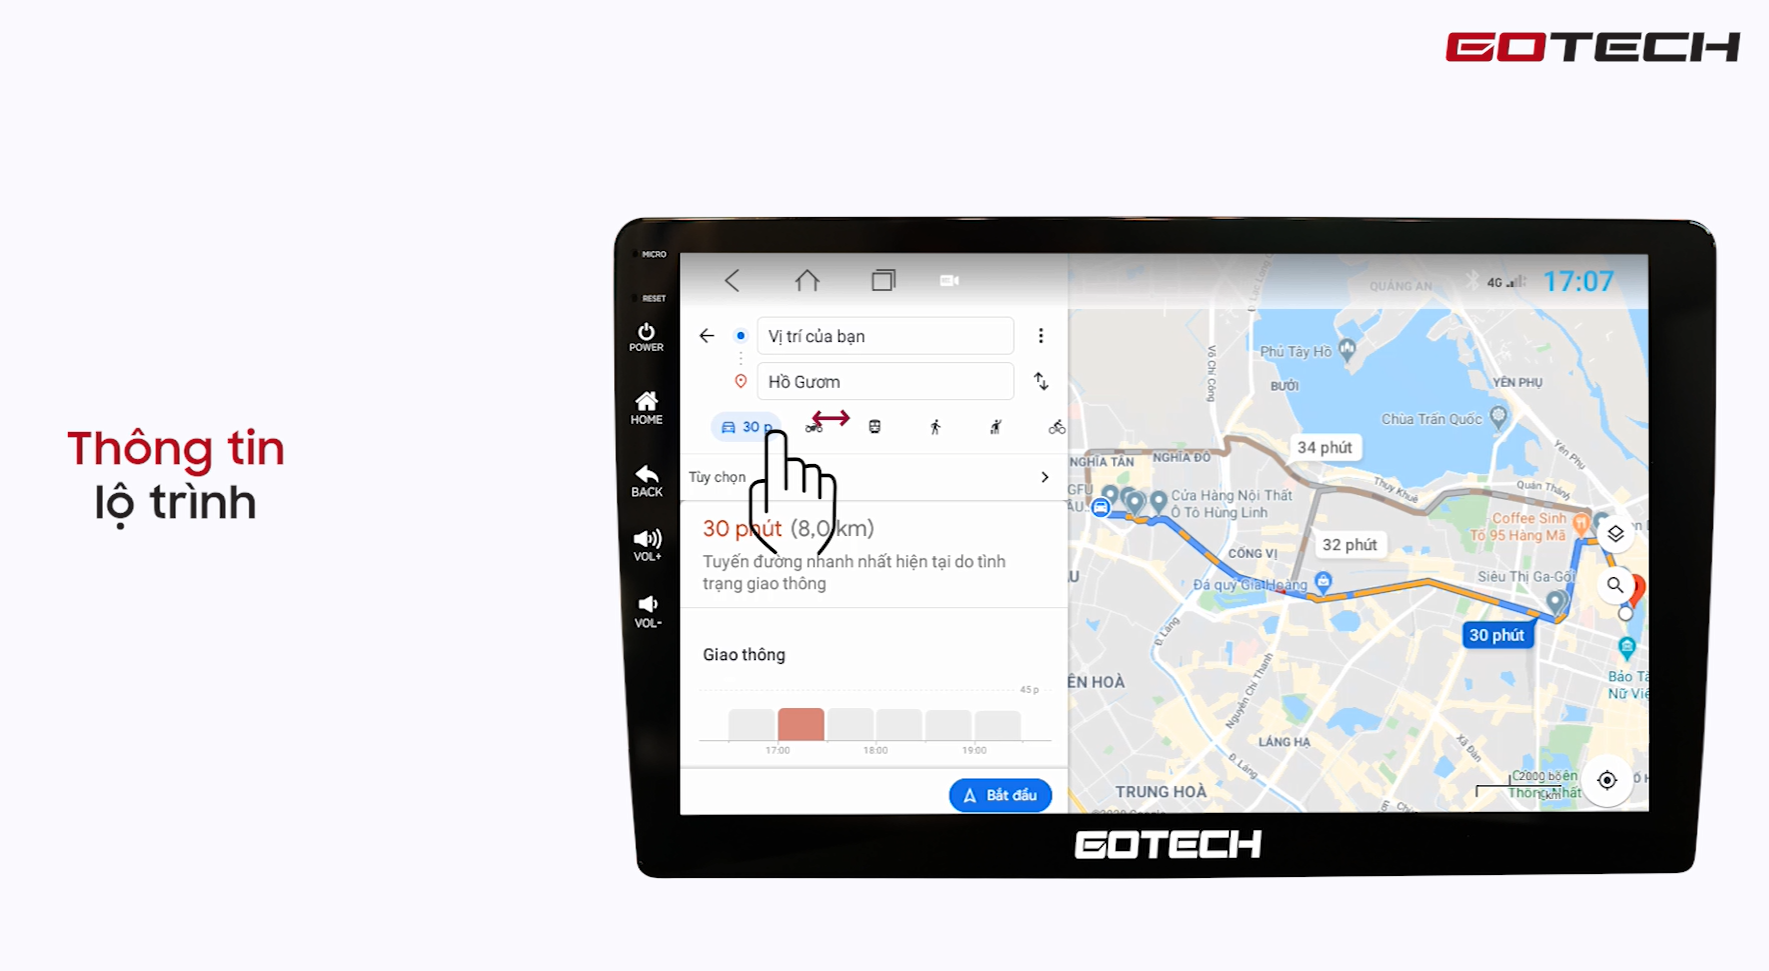 Hướng dẫn sử dụng Google Maps trên màn hình Gotech